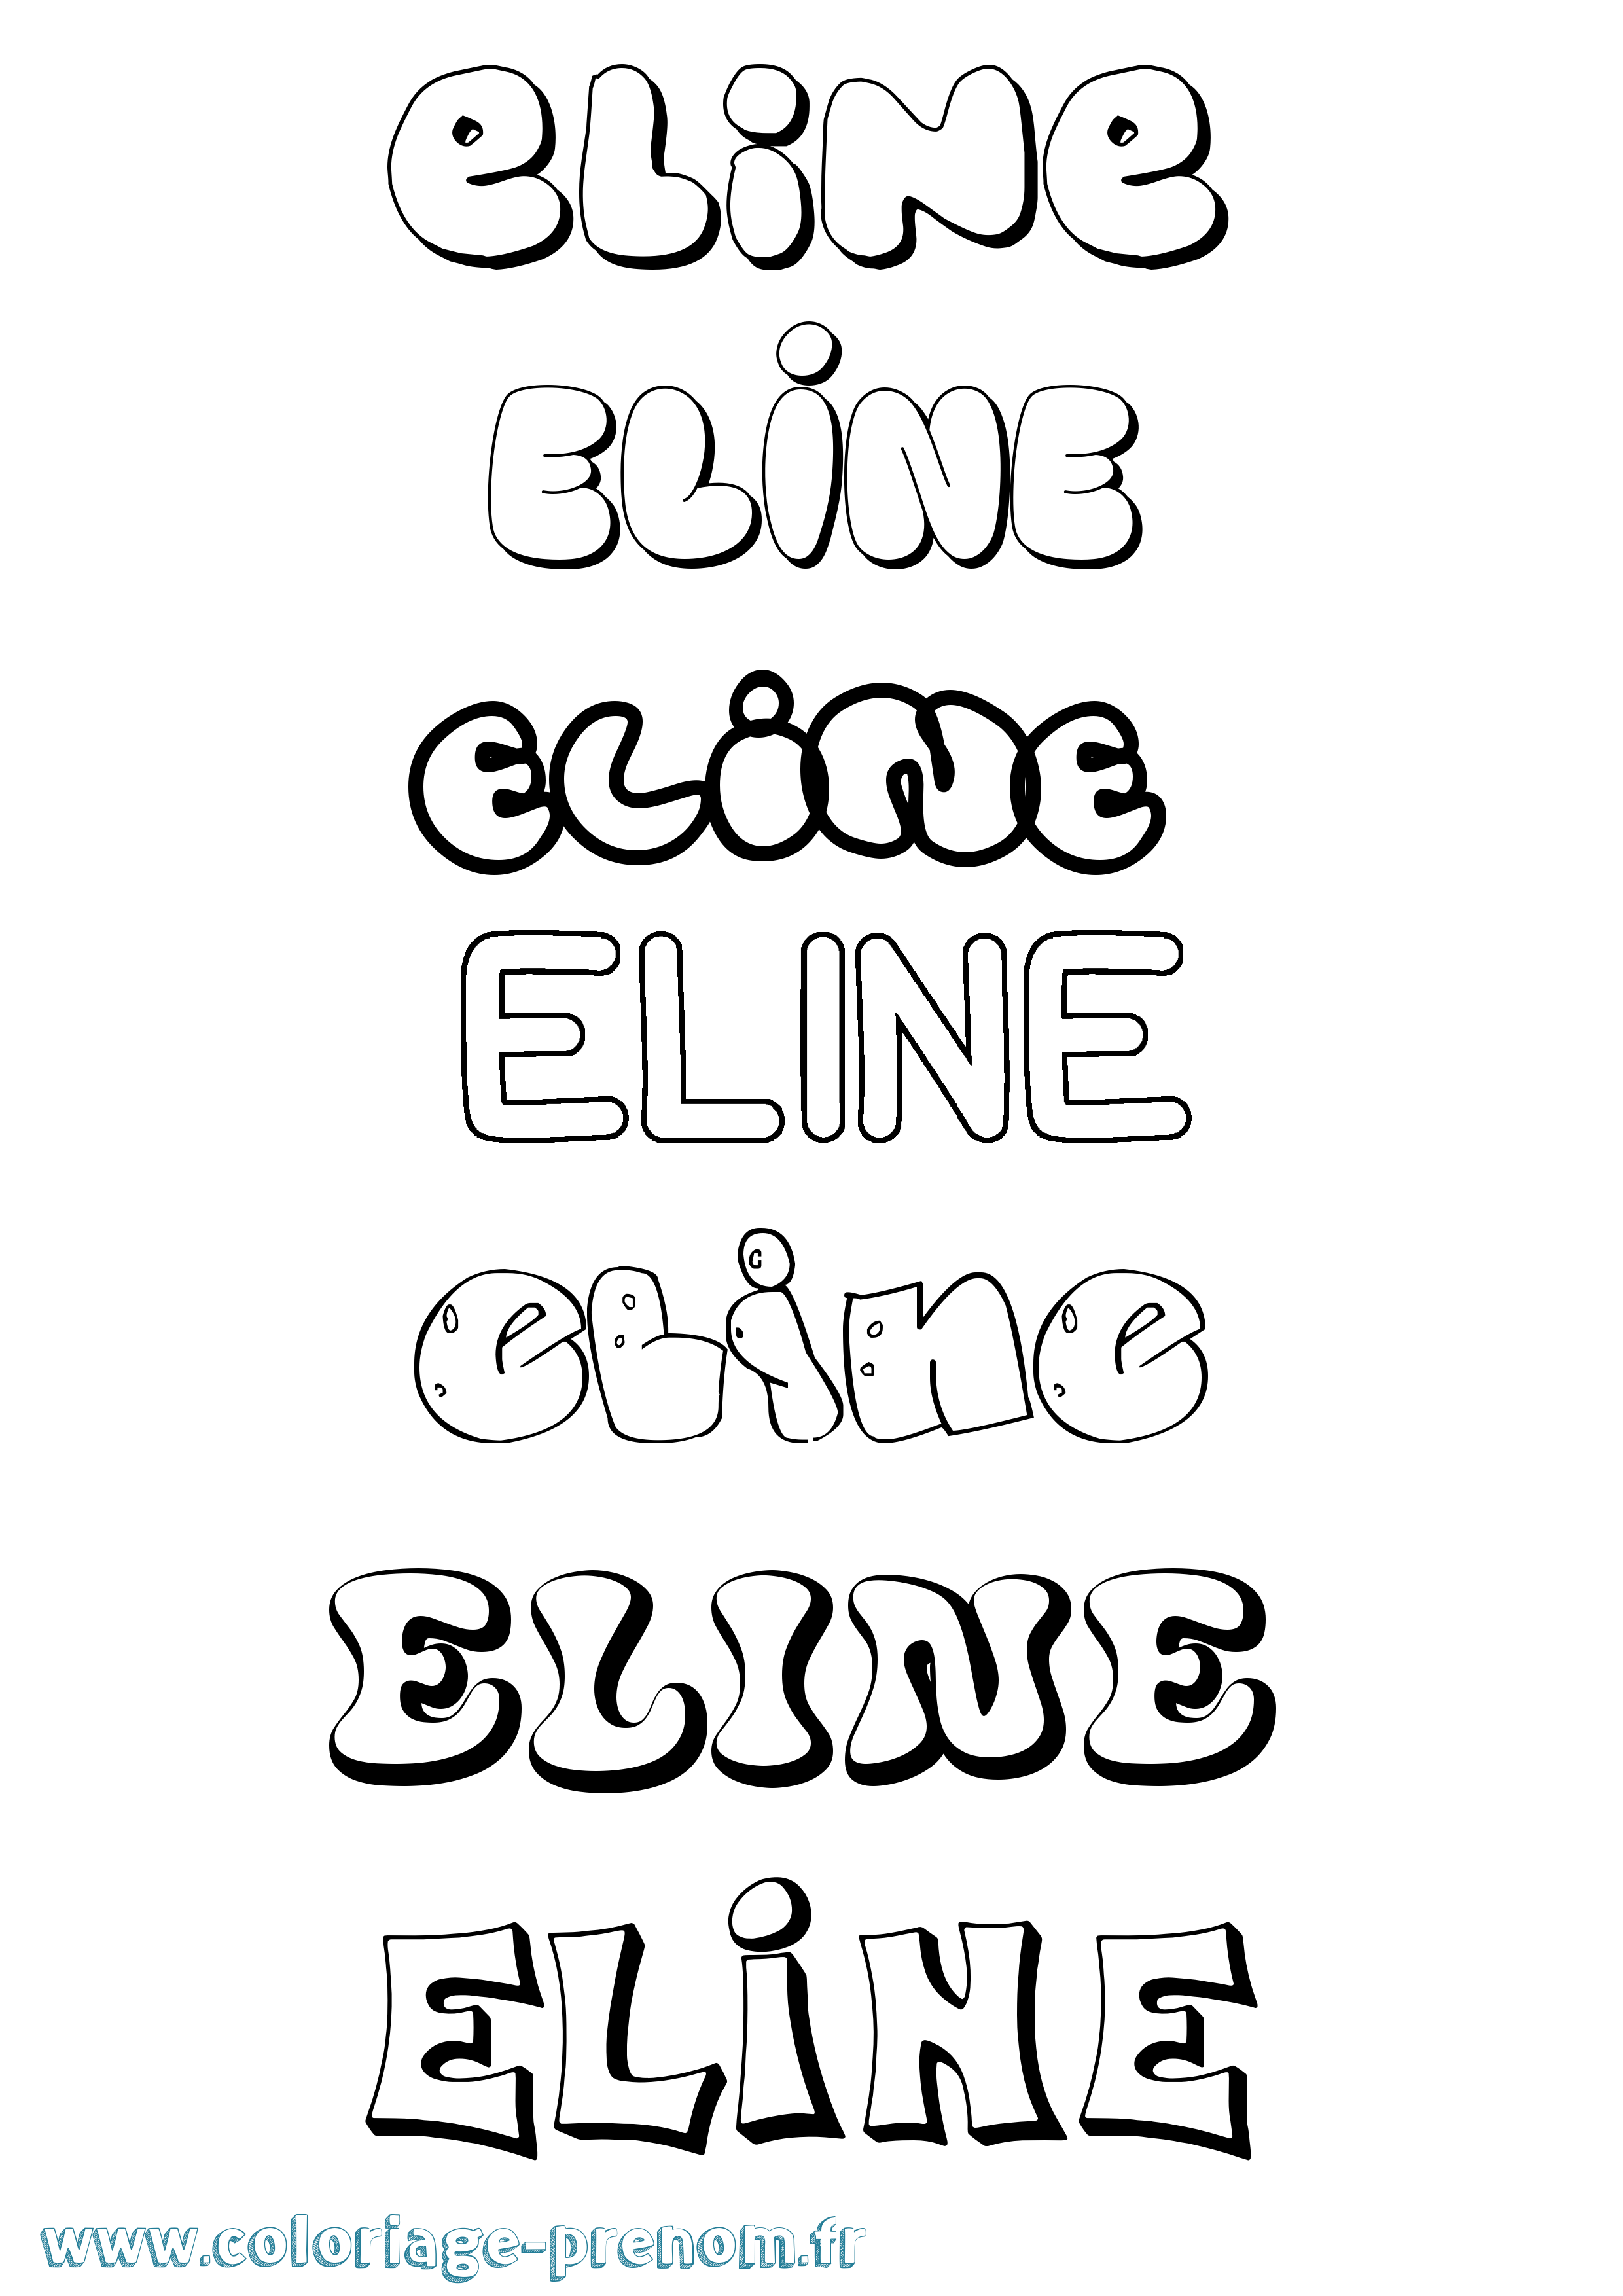 Coloriage prénom Eline Bubble